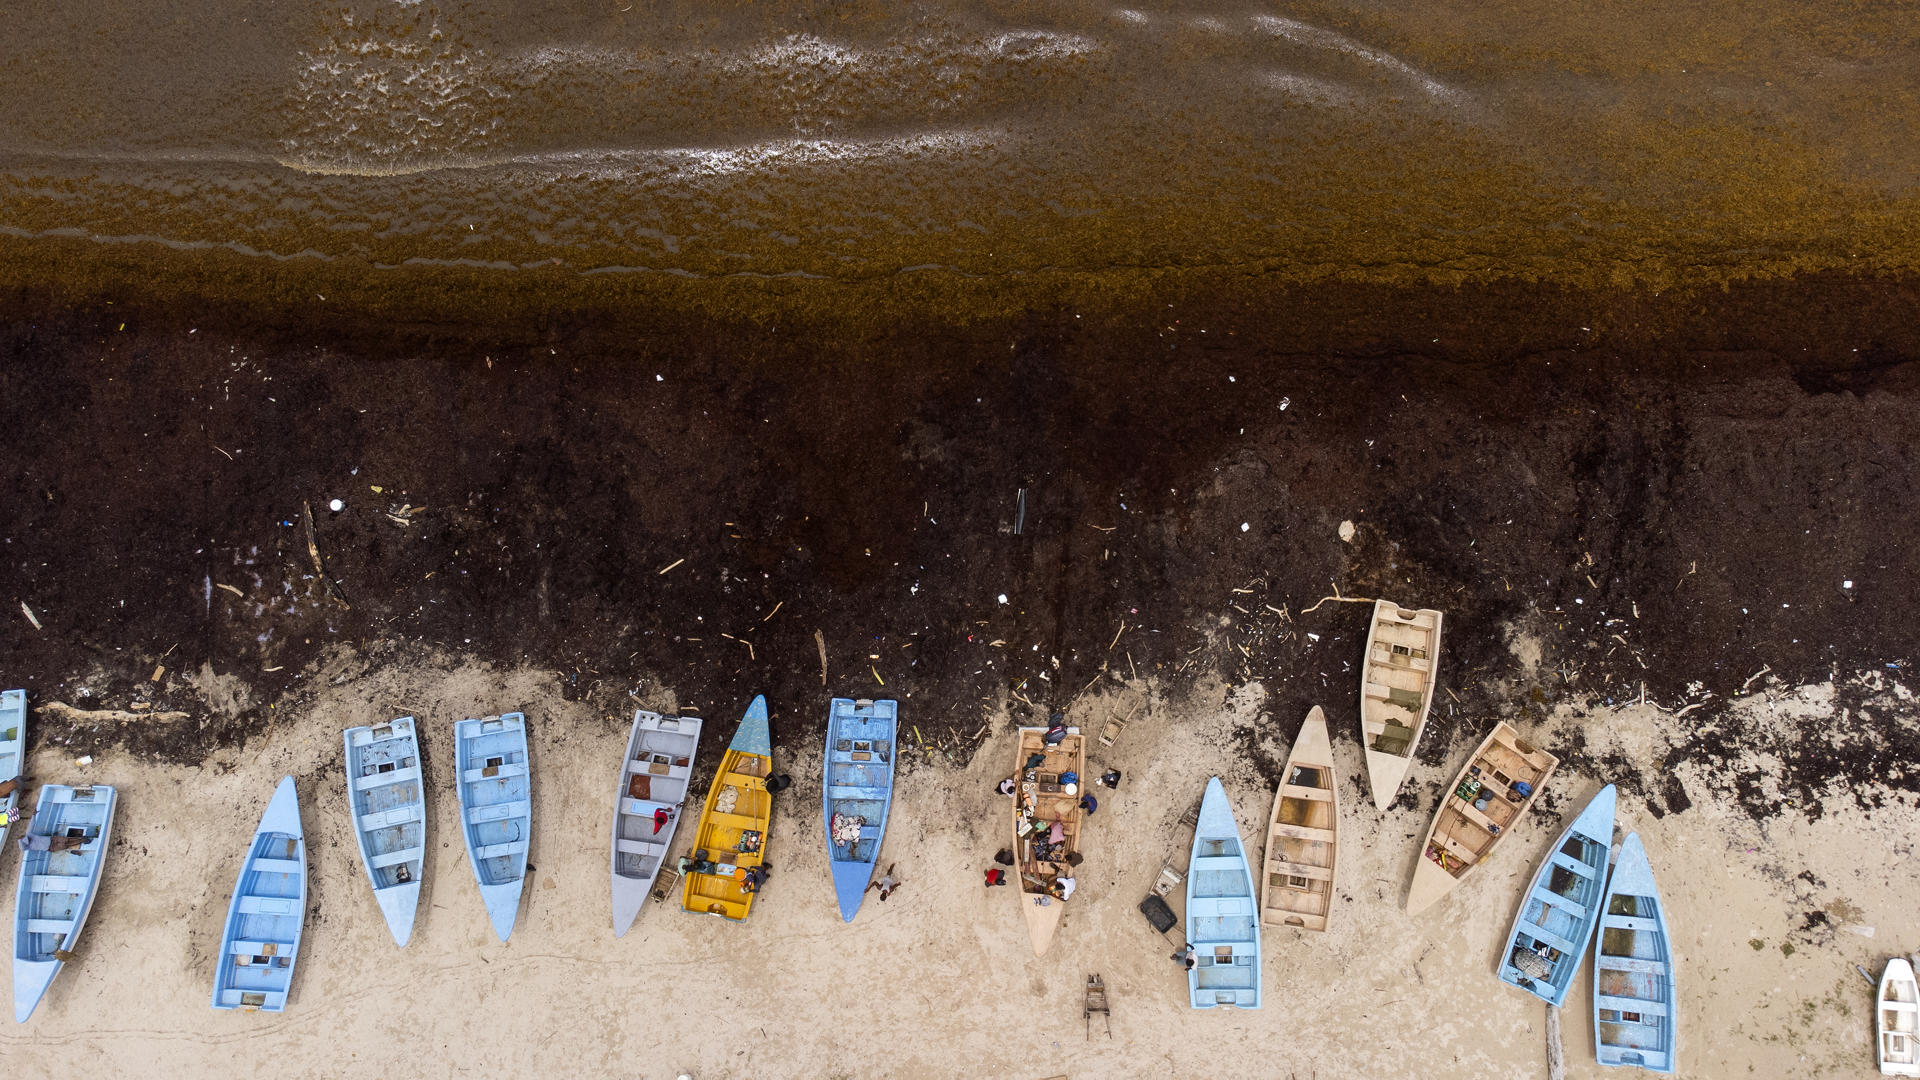 Fotografía aérea tomada hoy muestra botes de pescadores en una playa cubierta de sargazo, una macroalga flotante que forma colonias que llegan a cubrir grandes extensiones y se mueven de acuerdo con las corrientes oceánicas, en Guayacanes (República Dominicana). EFE/Orlando Barría